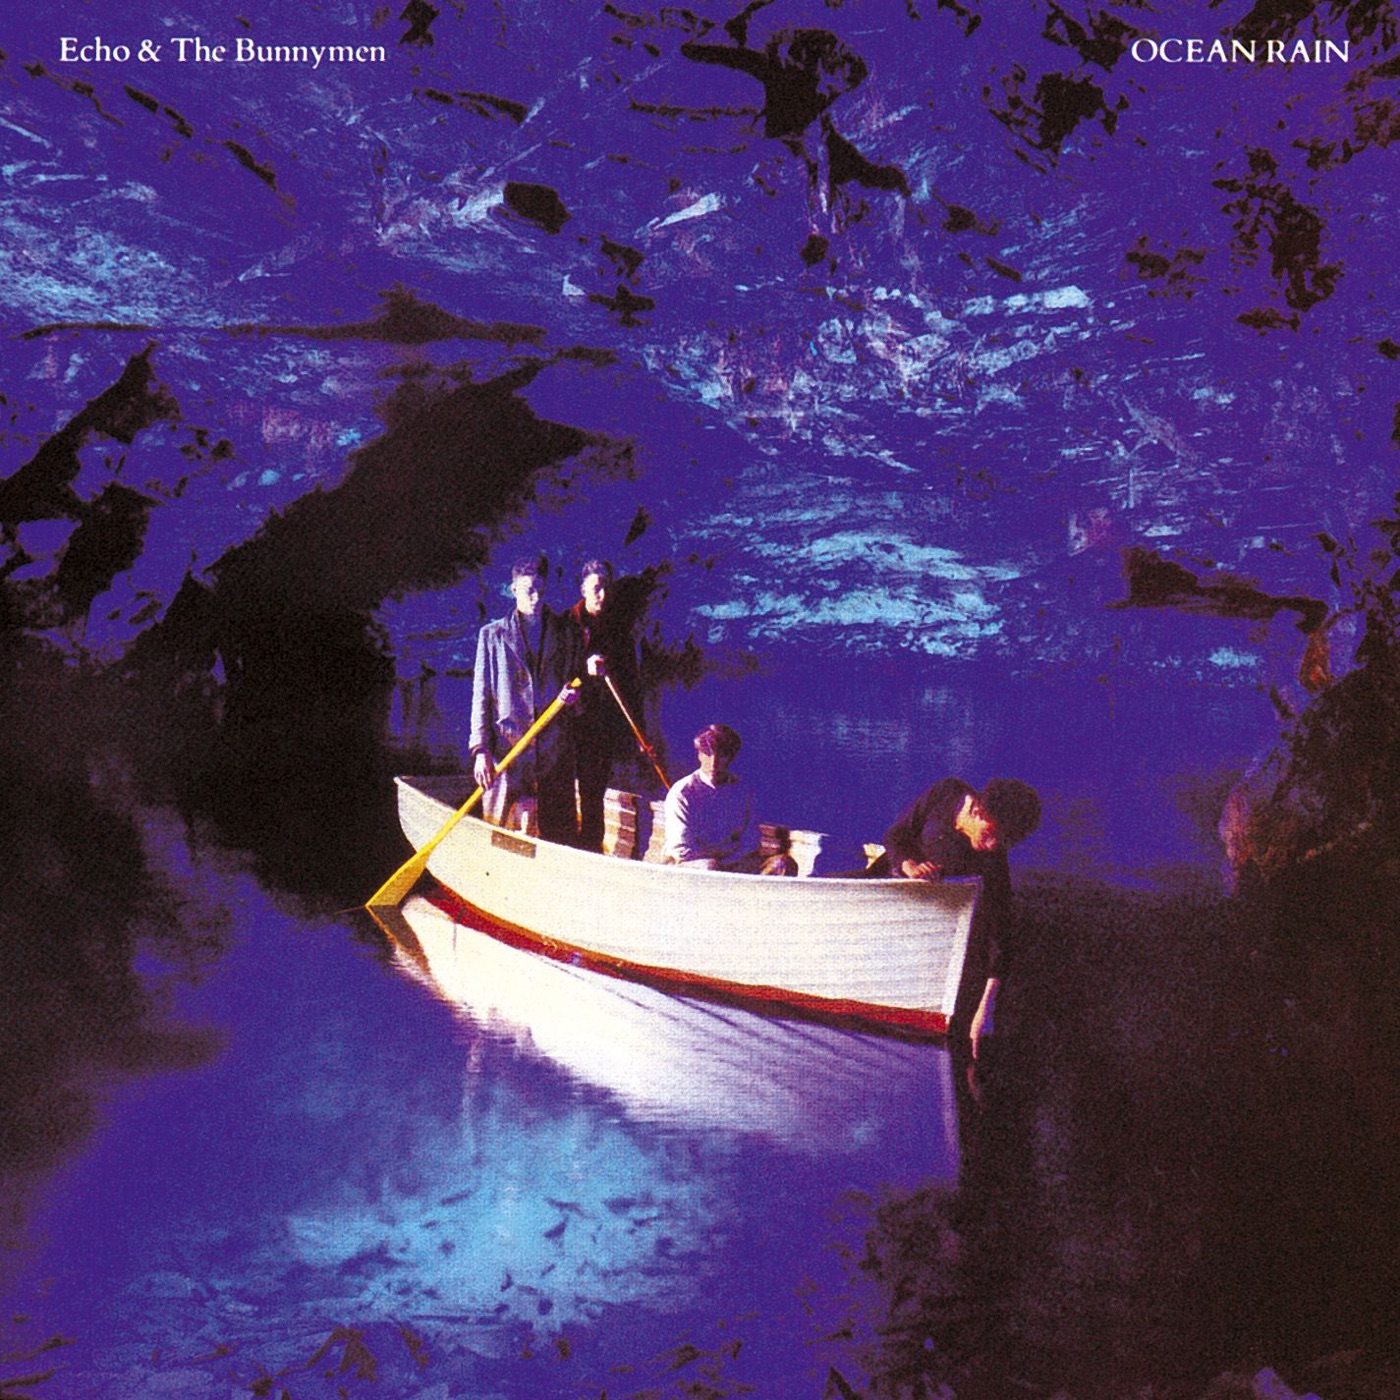 Ocean Rain by Echo & the Bunnymen